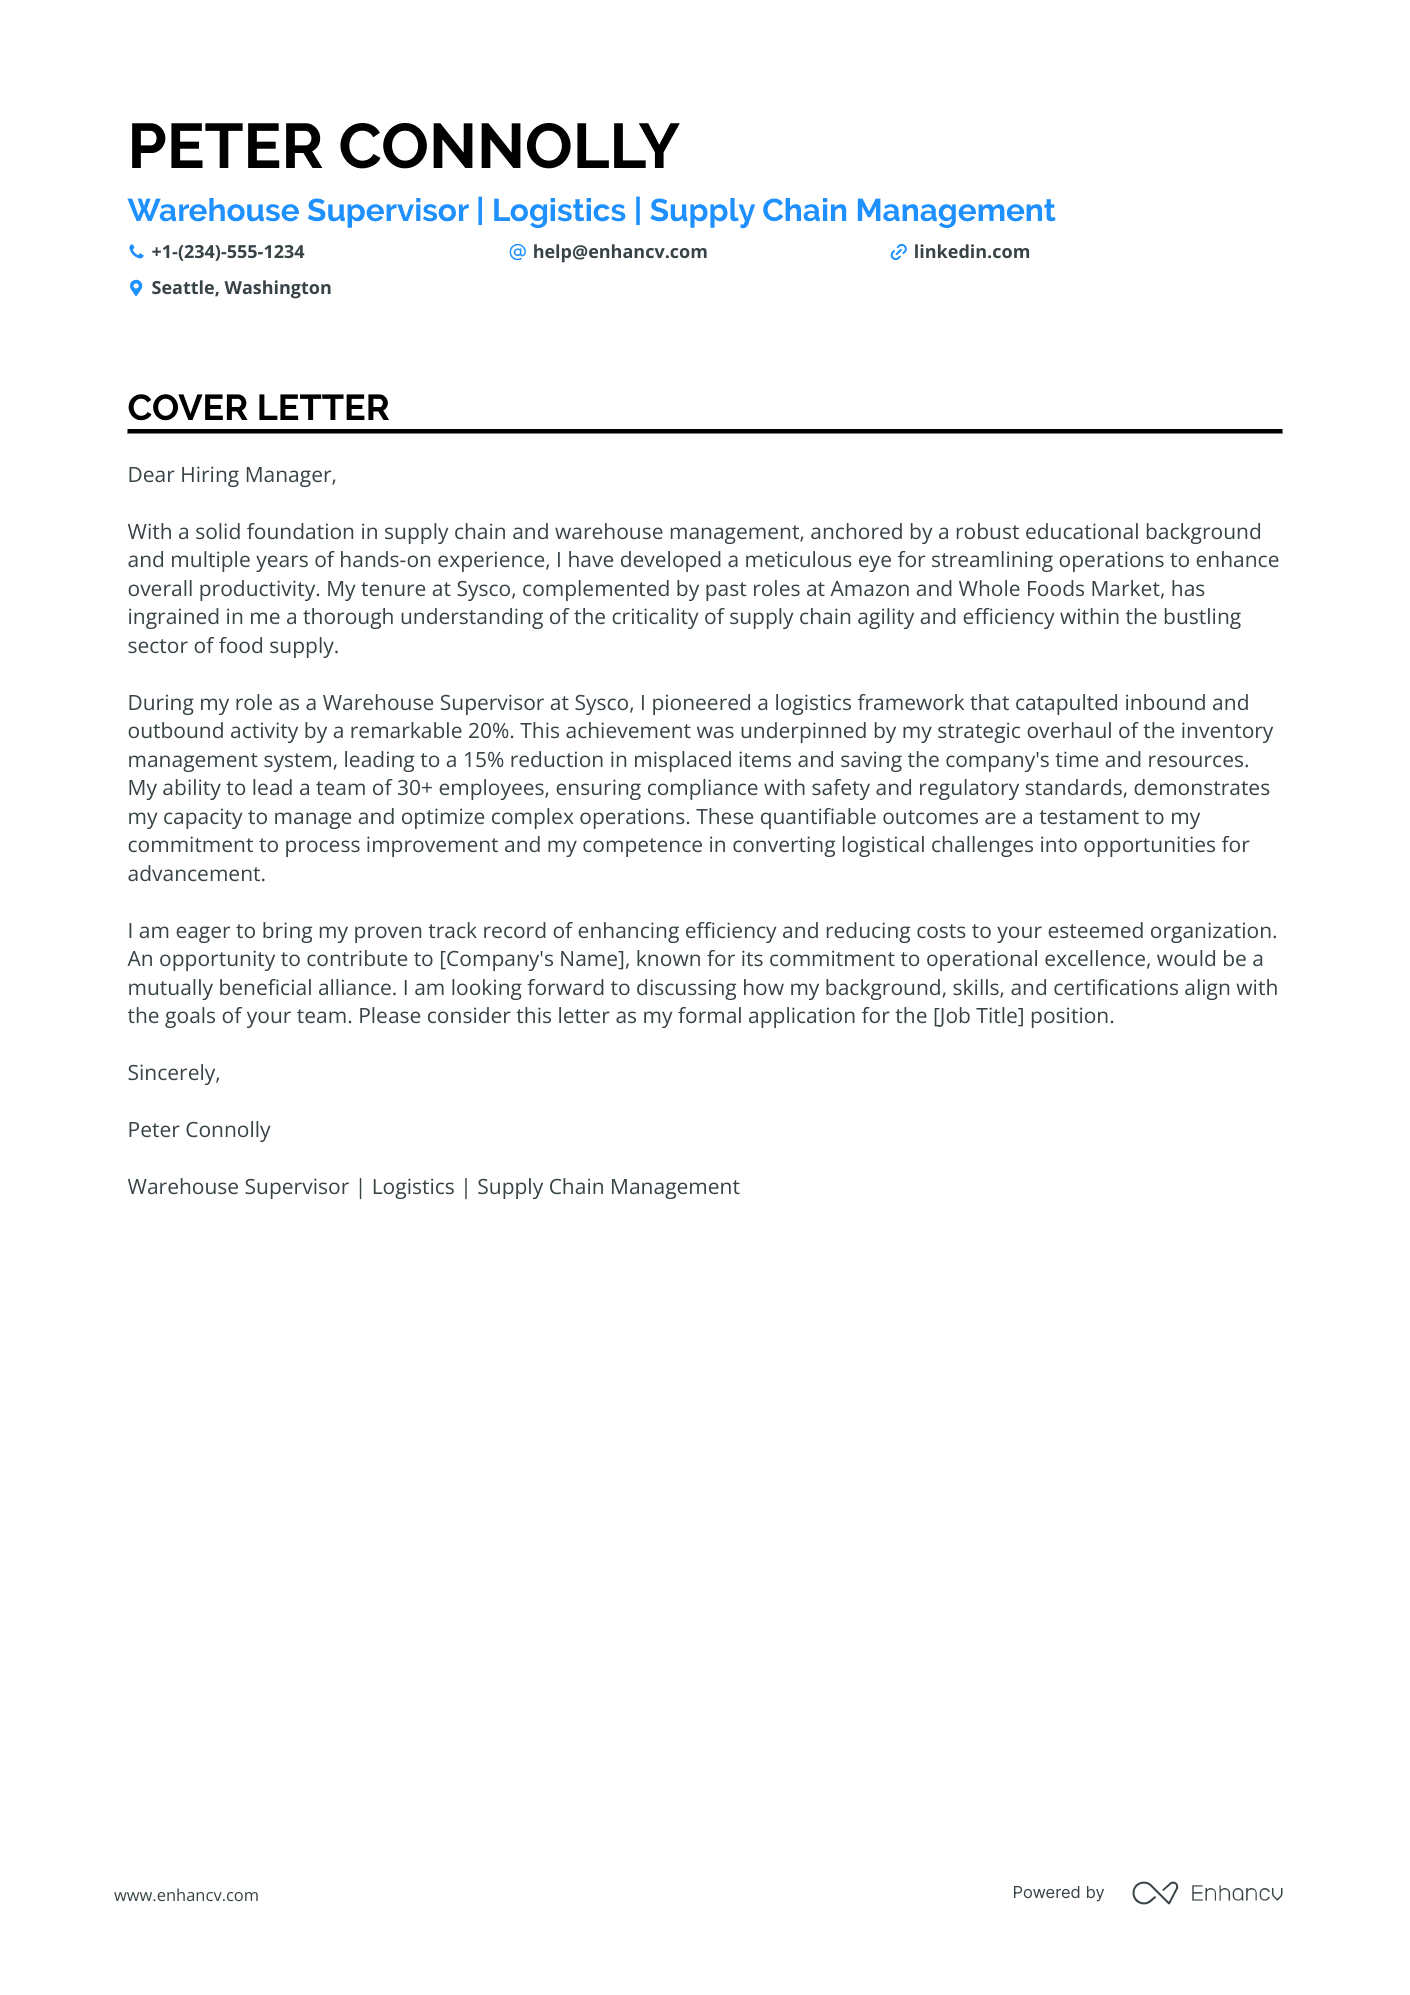 Warehouse Supervisor cover letter